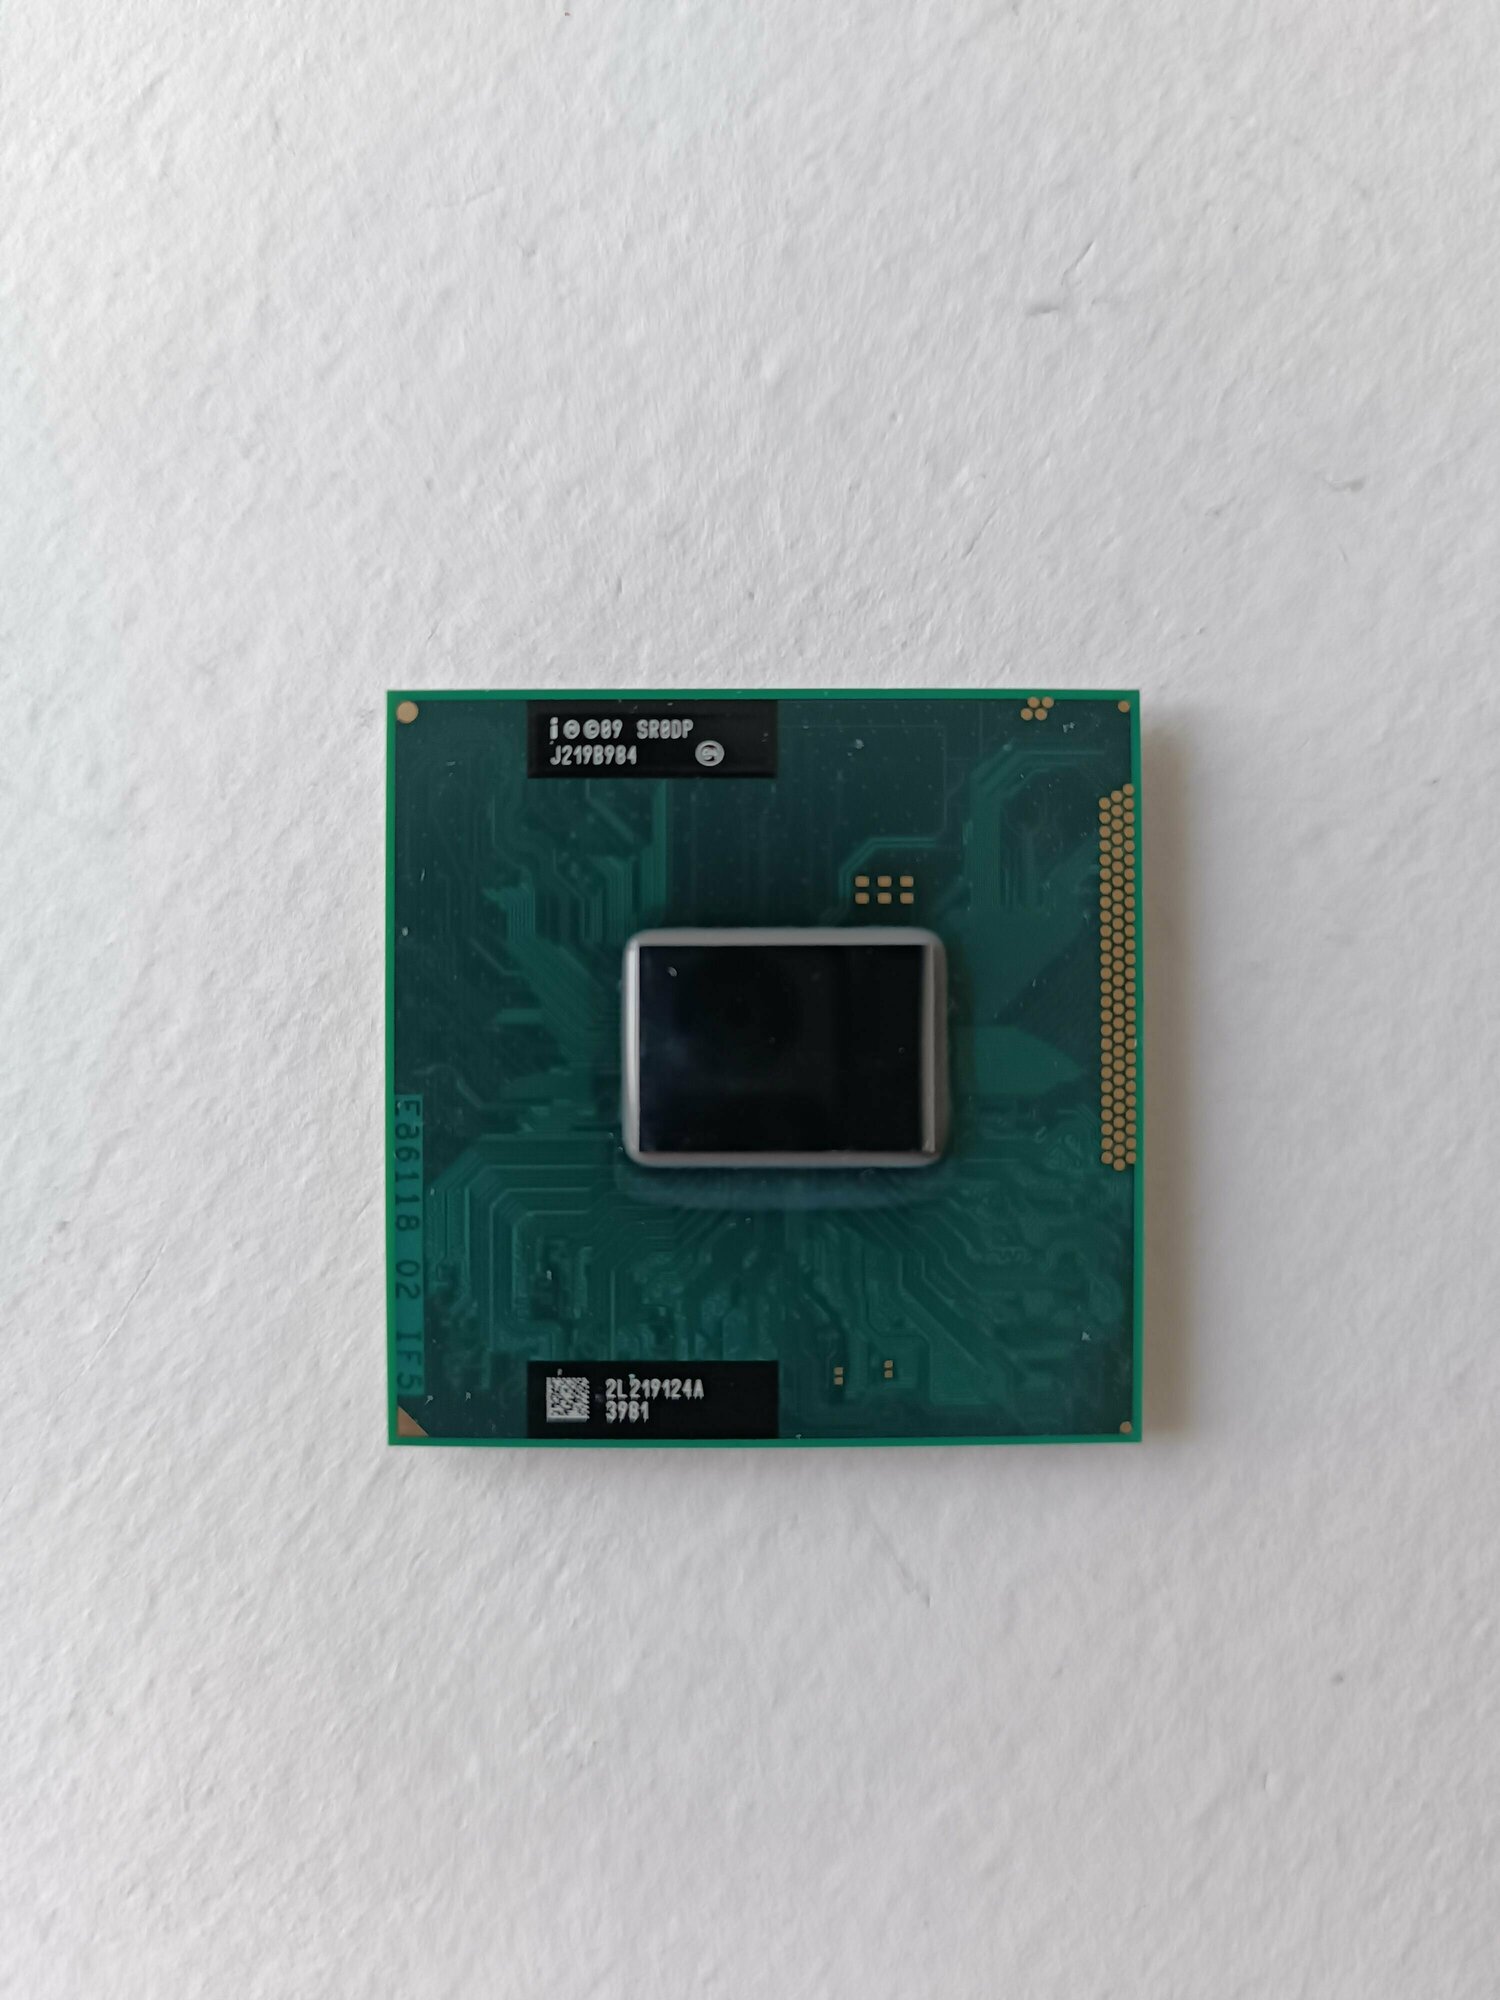 Intel Core i3-2370M SR0DP 2.4ГГц/3M Sandy Bridge 2 ядра 4 потока PPGA988 процессор для ноутбука